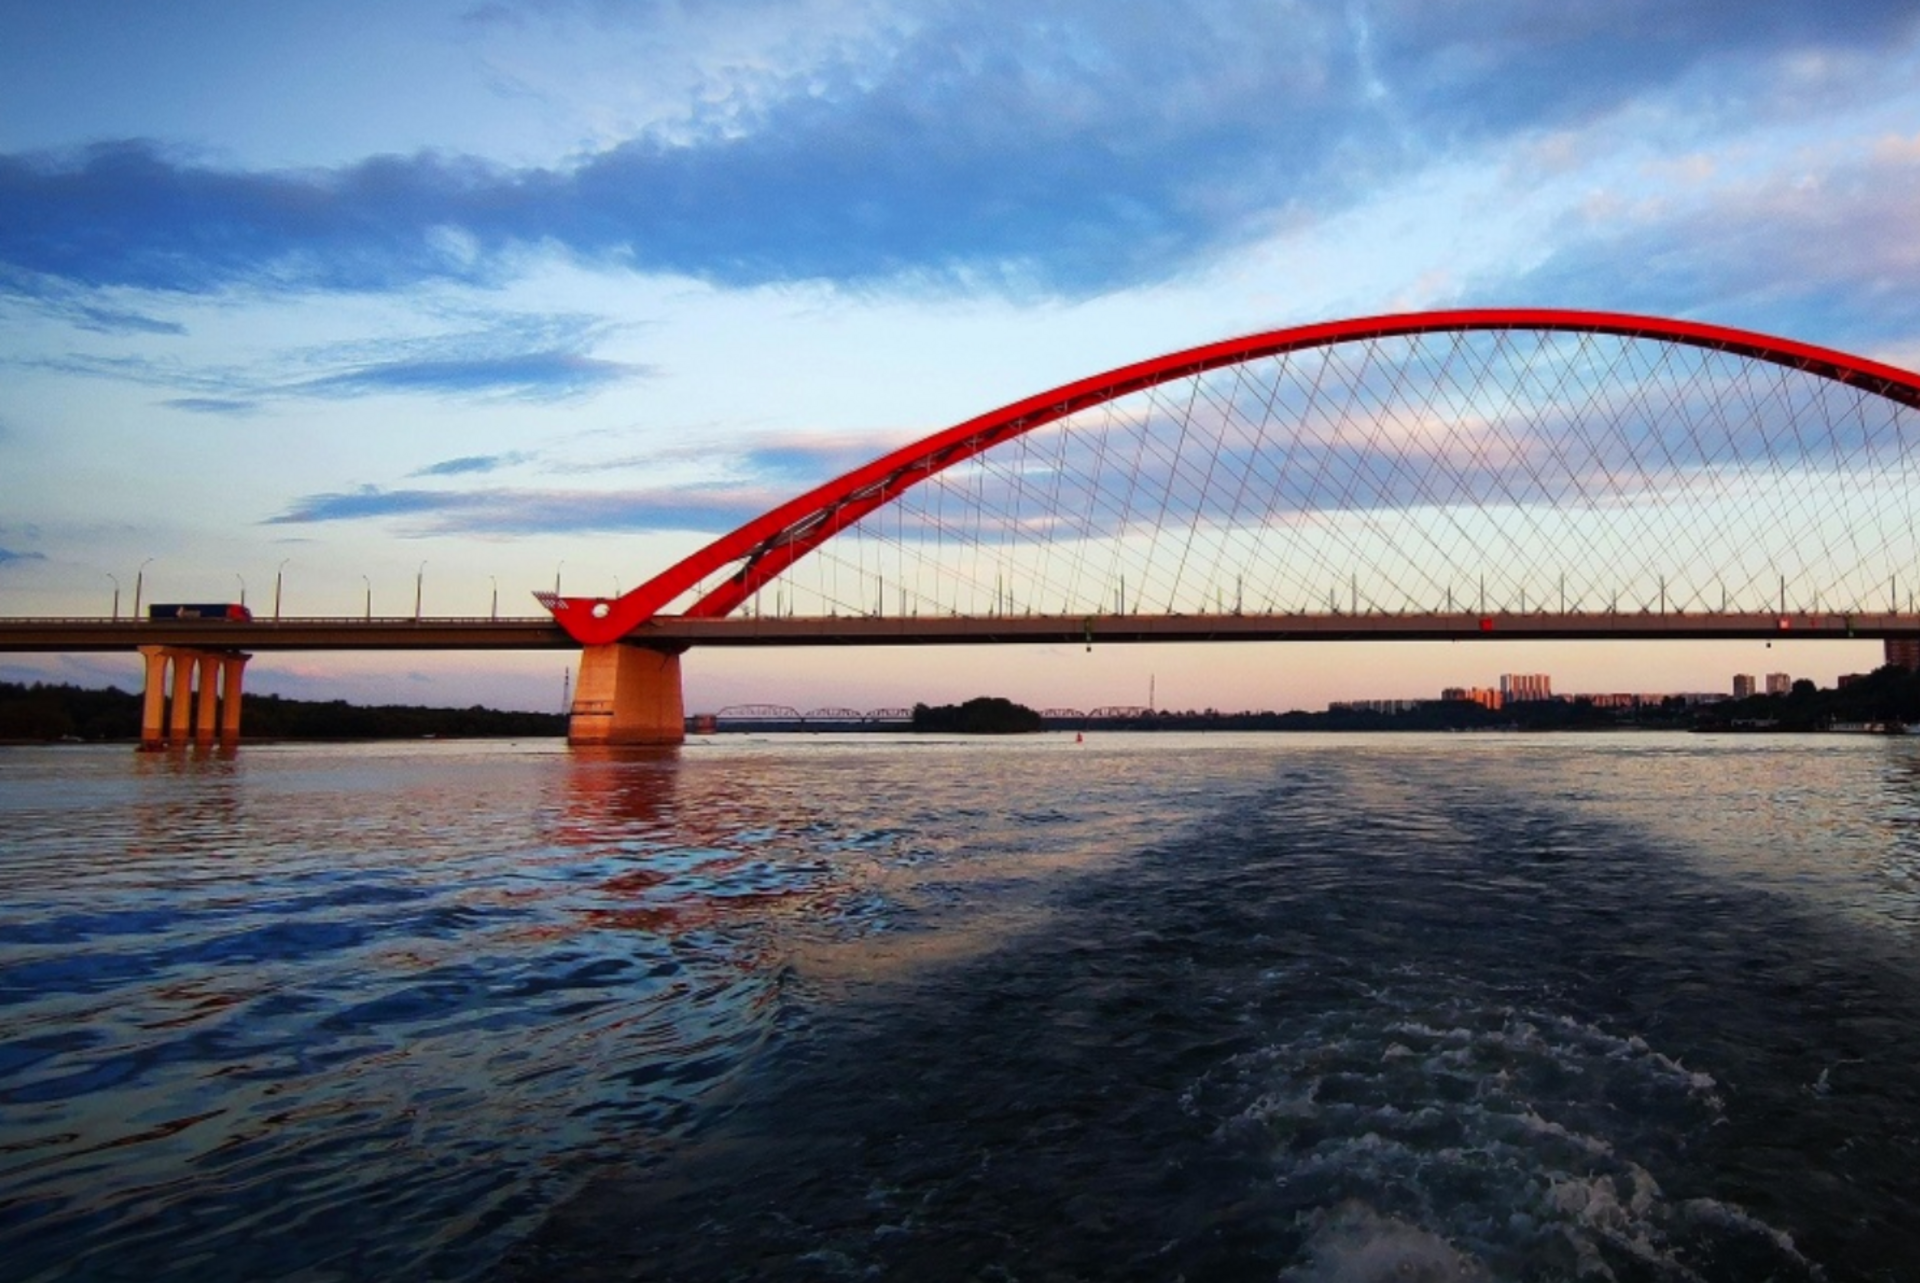 Обь Бугринский мост. Бугринский мост Новосибирск. Река Обь Новосибирск. Новосибирск мост новый Бугринский. Мост обь новосибирск